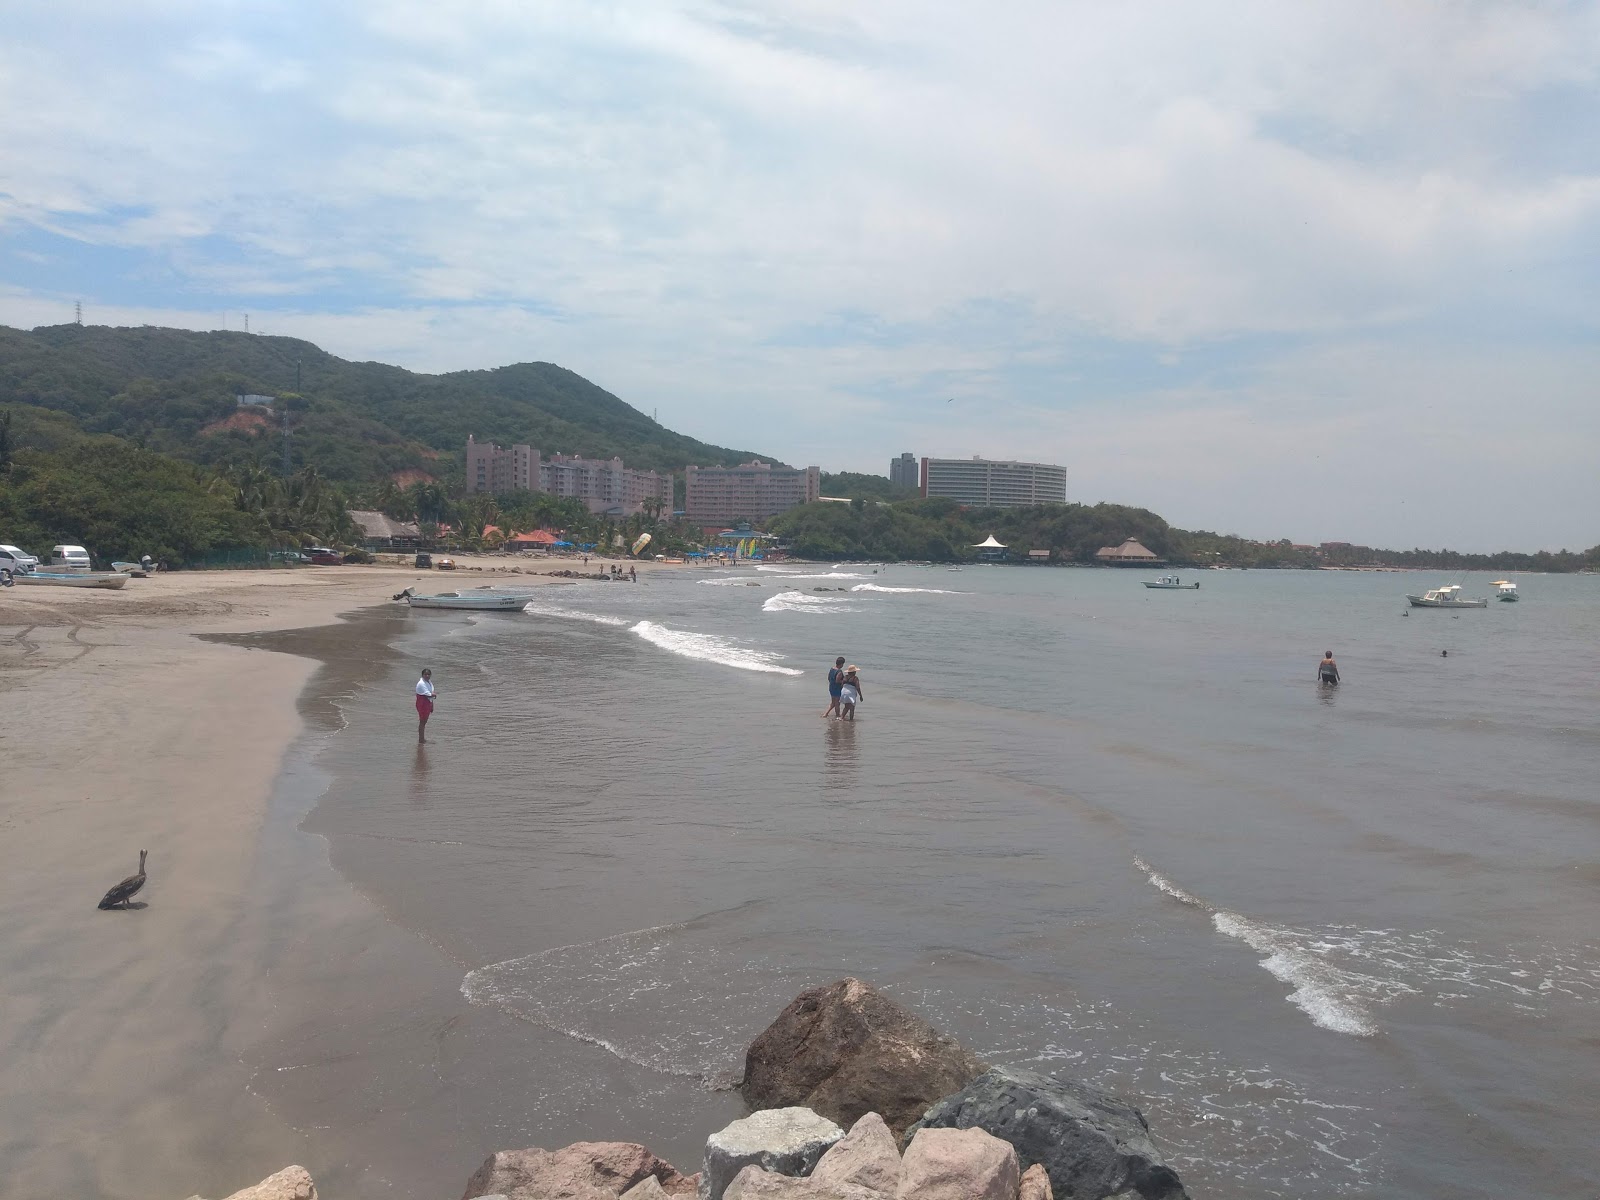 Zdjęcie Playa Linda II - popularne miejsce wśród znawców relaksu